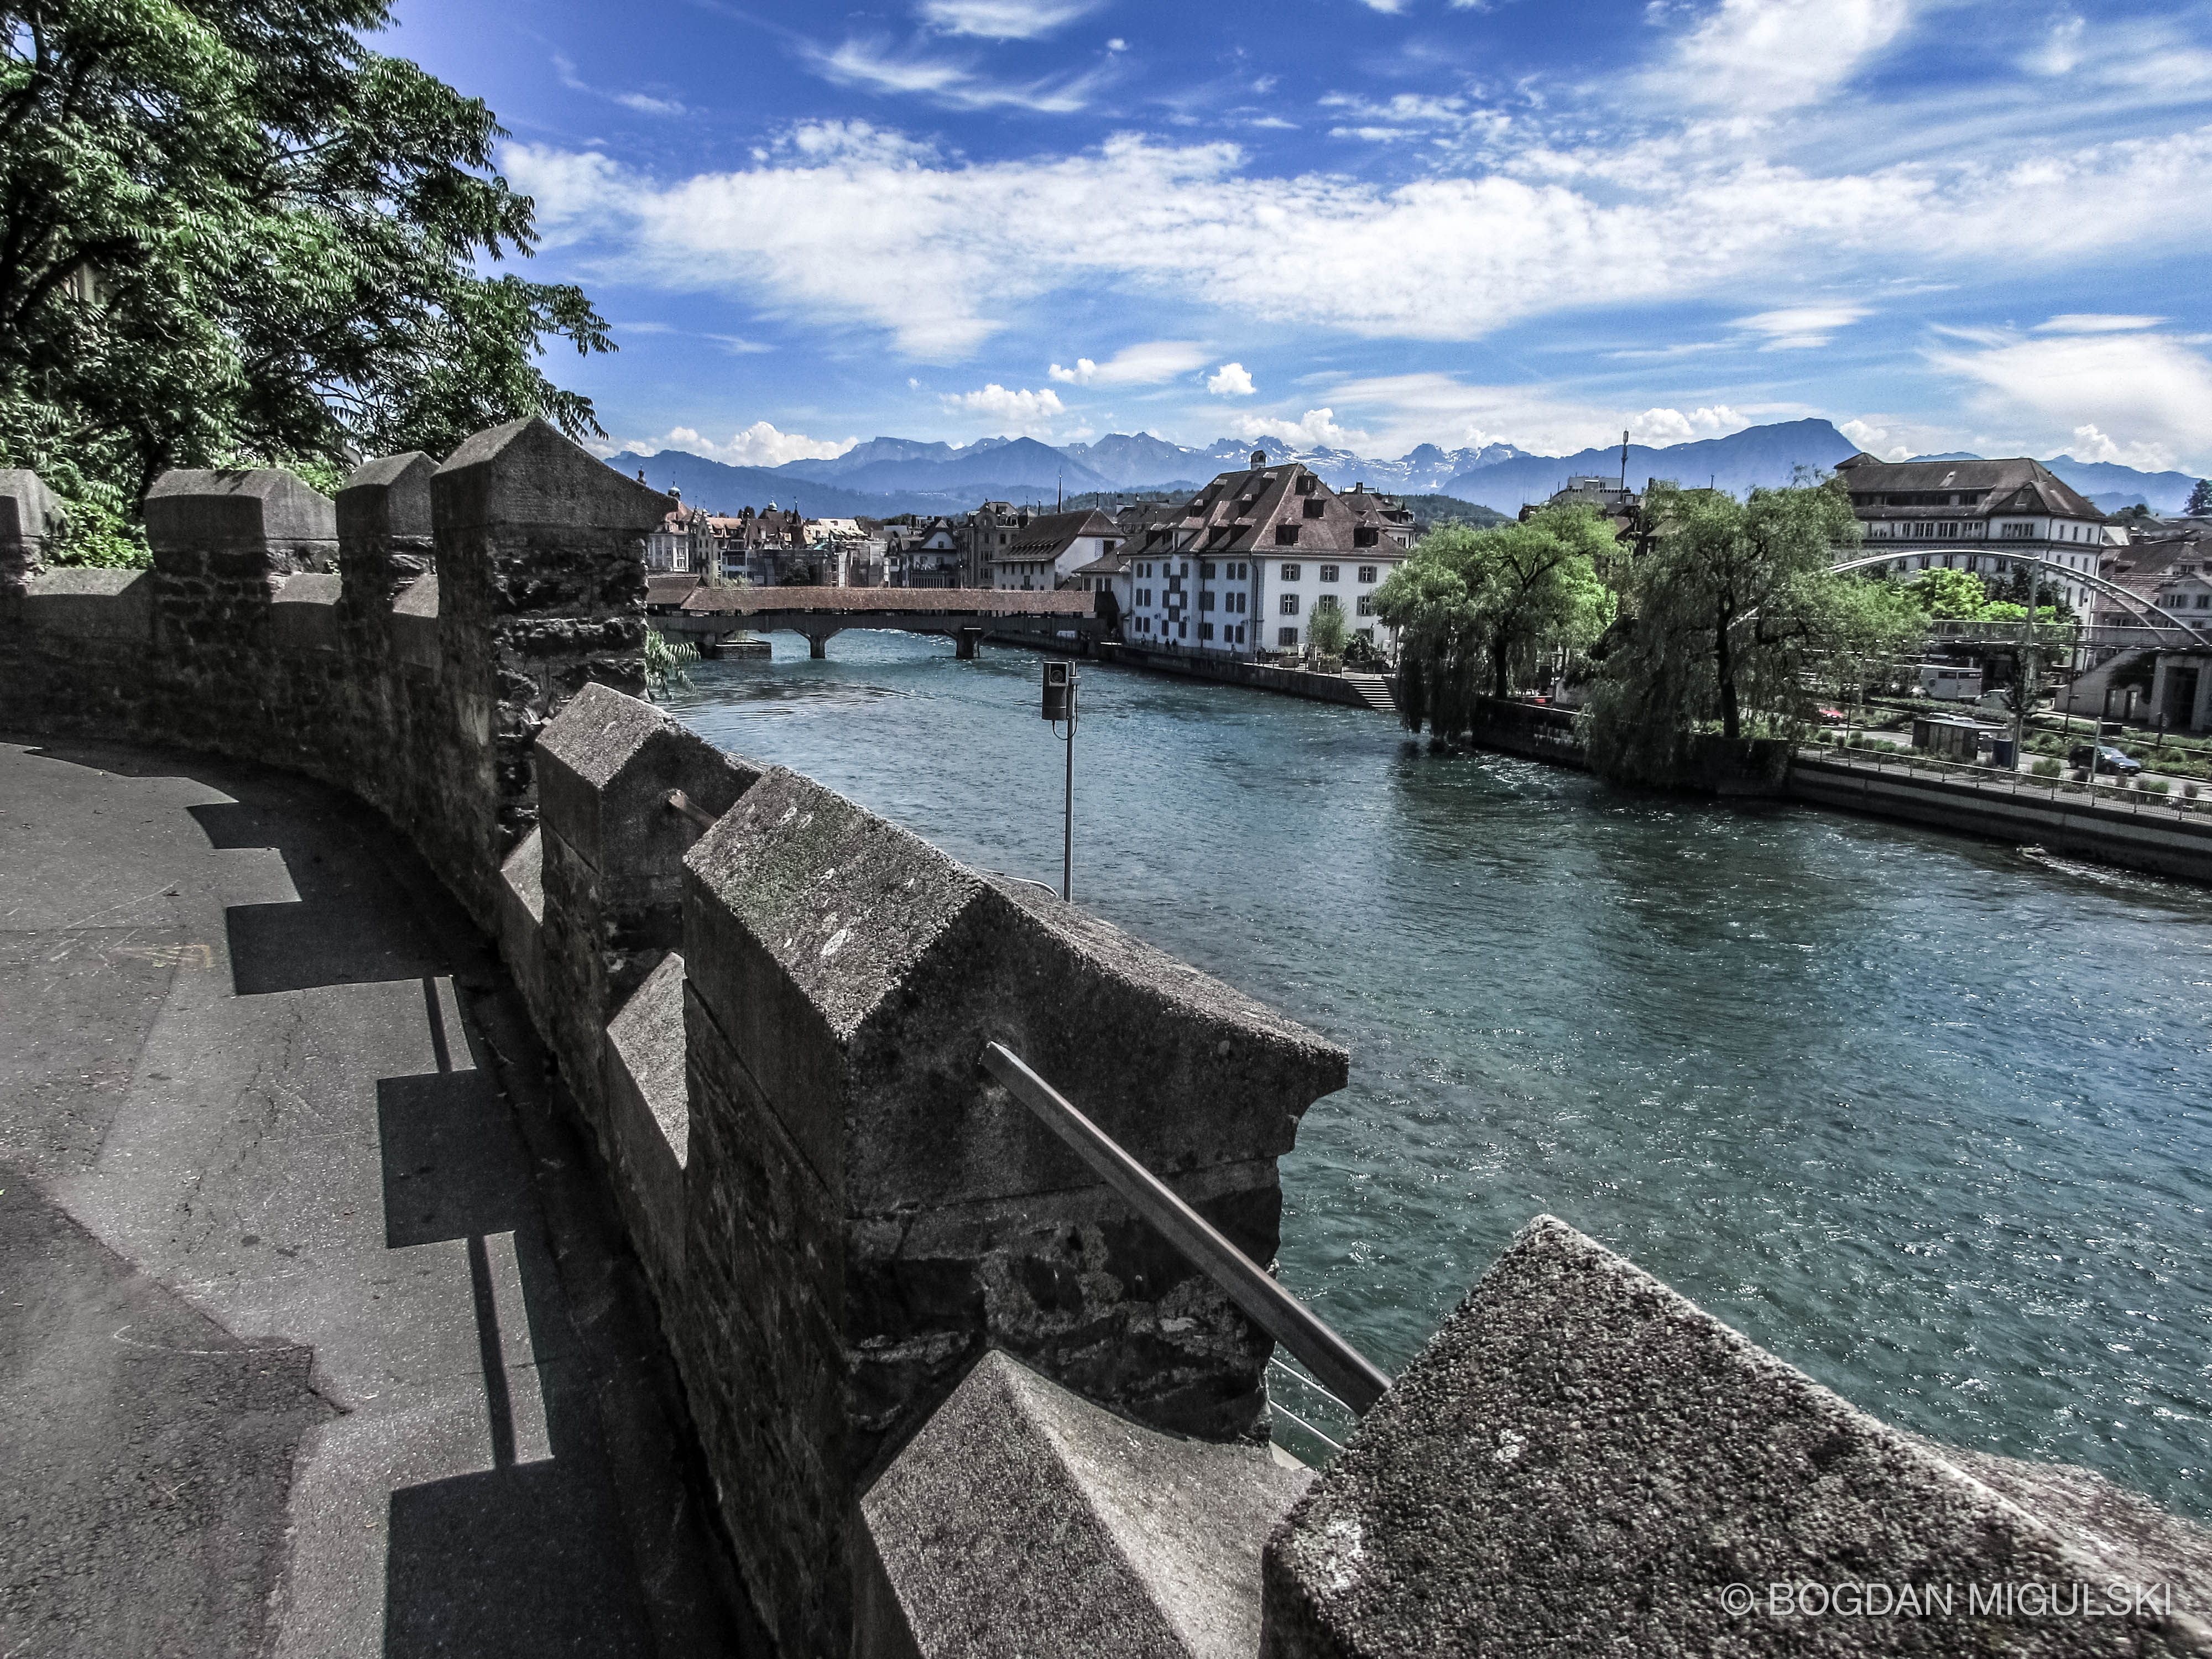 Overlooking the Reuss River in Luzern, Switzerland